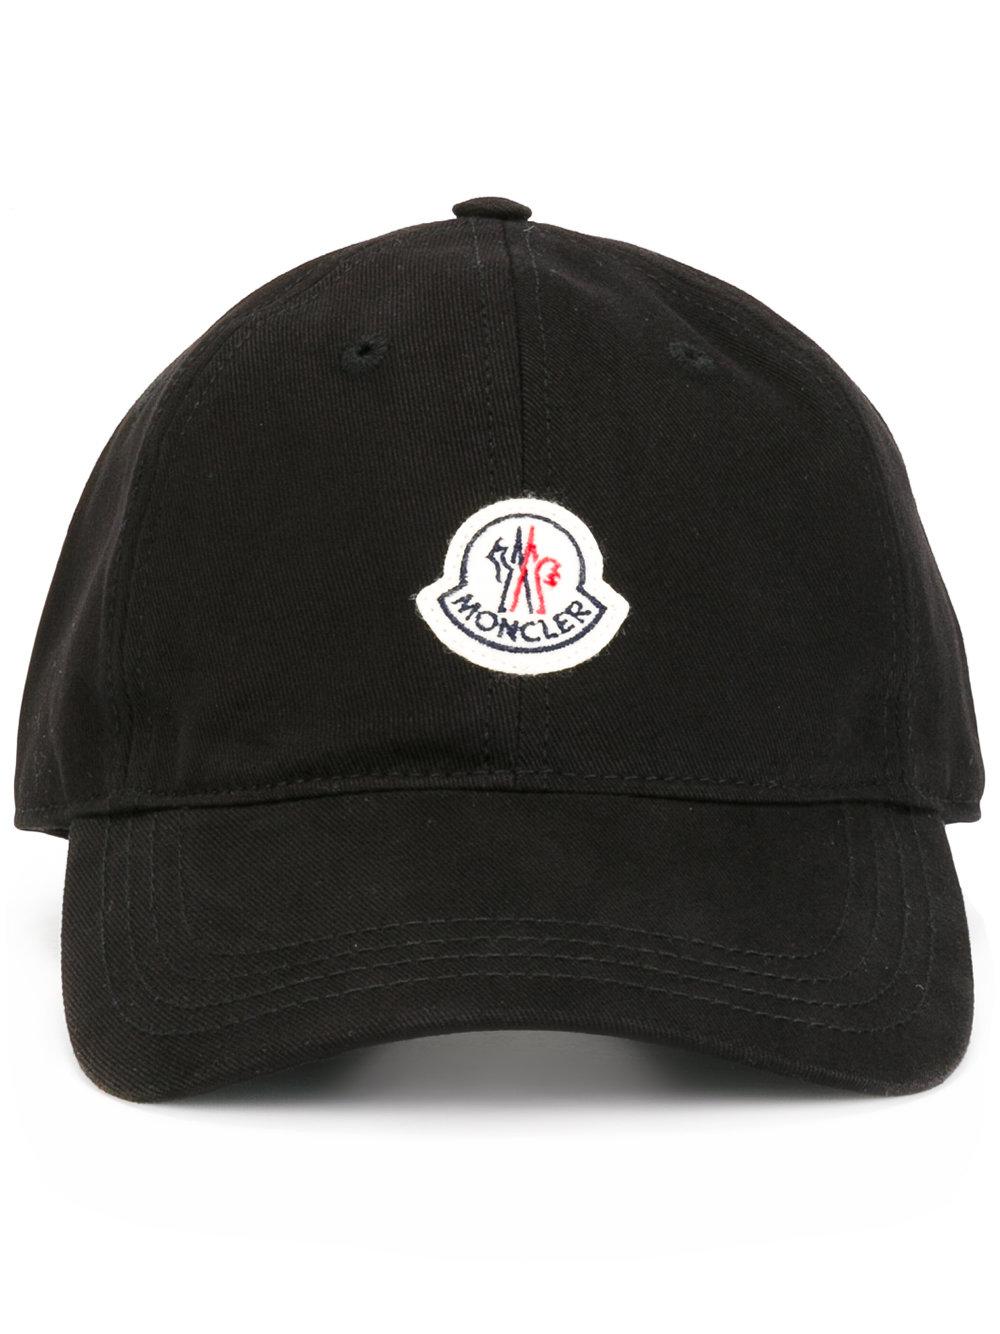 Moncler Cotton Logo Baseball Cap in Black for Men - Lyst